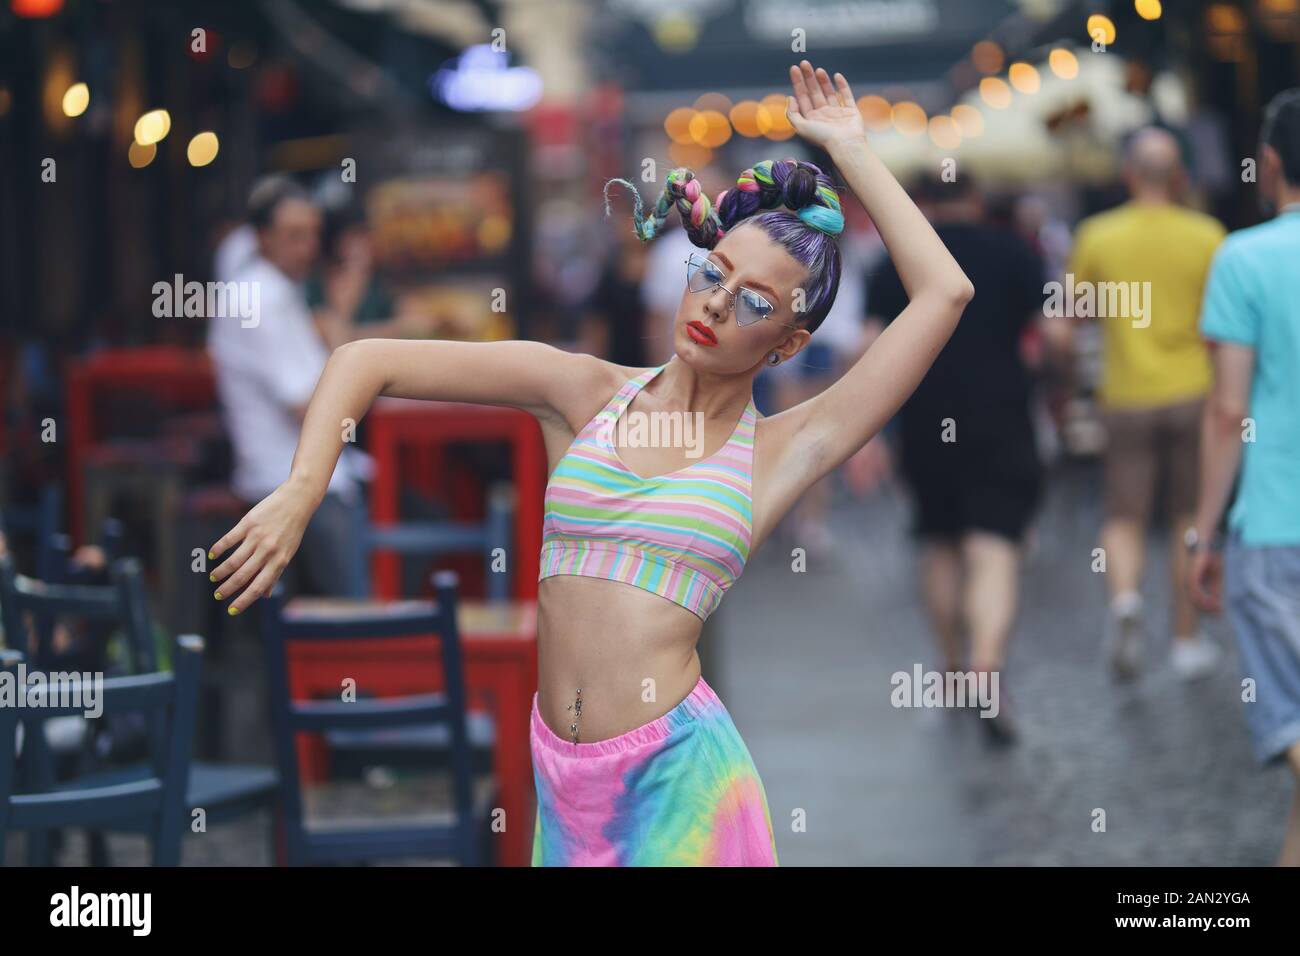 Exzentrische junge Frau Tanzen mitten in einer belebten Straße - Freiheit Konzept Stockfoto